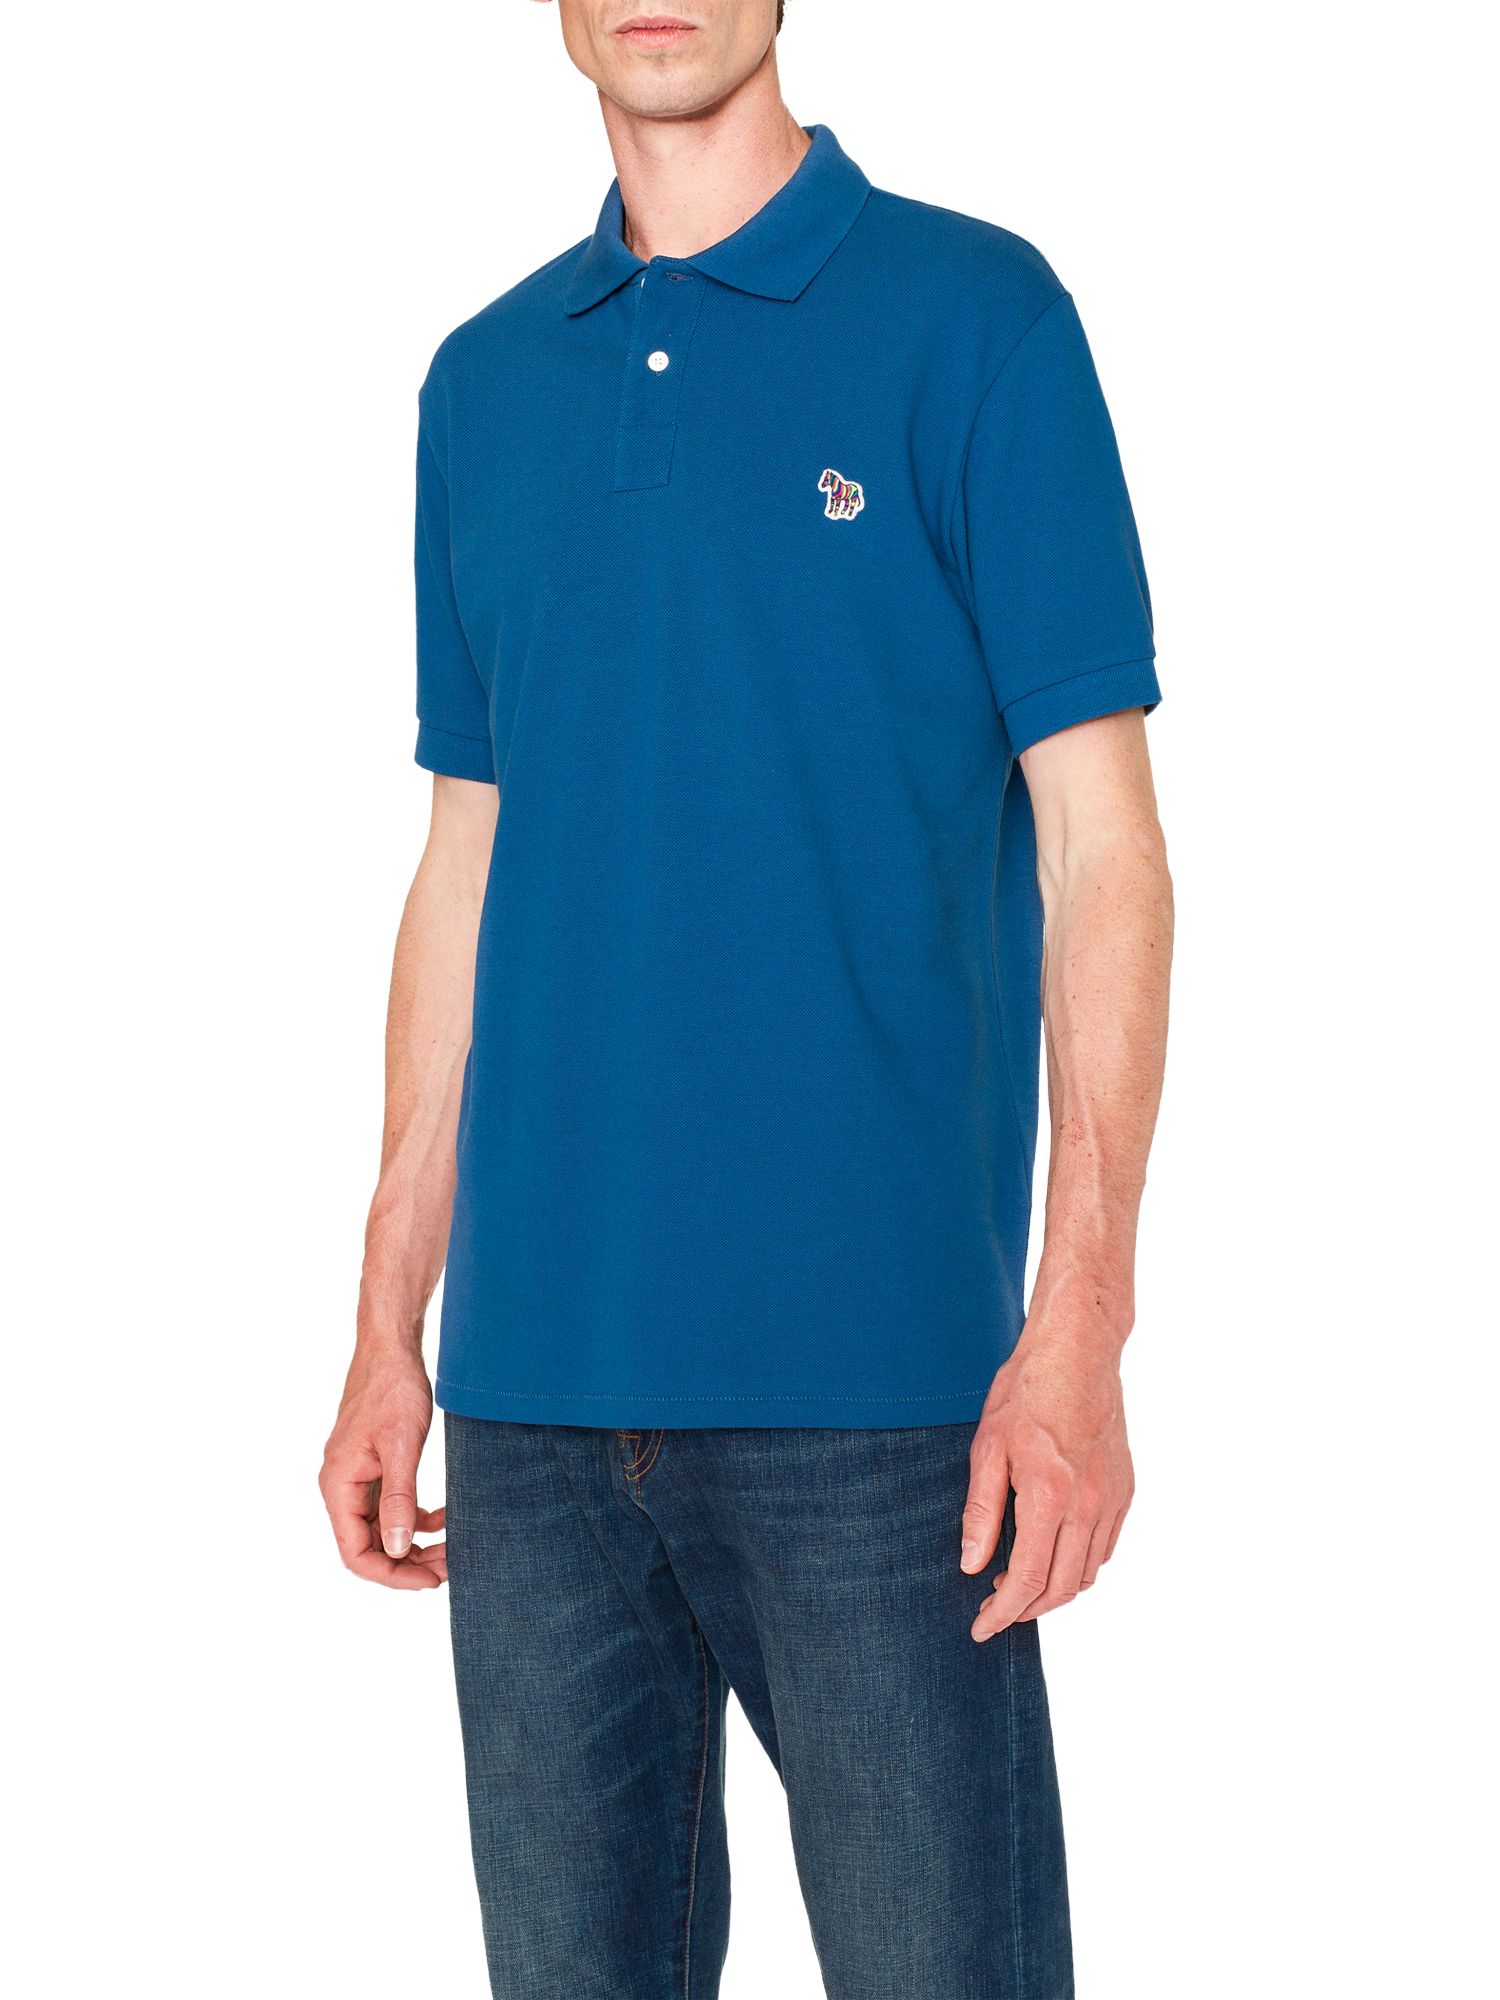 PS Paul Smith Organic Cotton Pique Zebra Polo Shirt, Blue